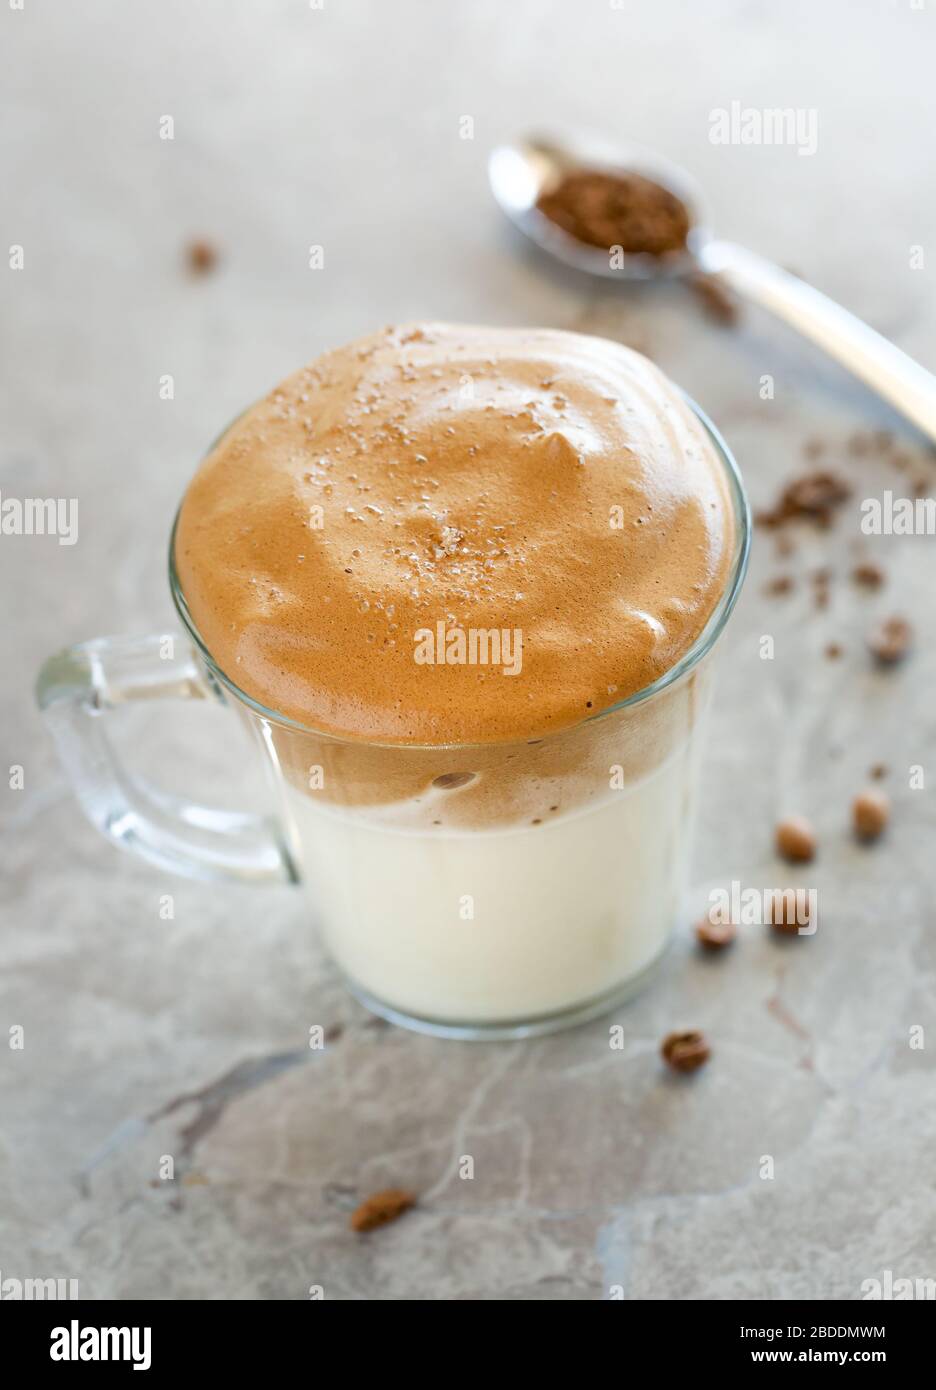 Crema di caffè Dalgona con latte in tazza di vetro con cucchiaio sullo sfondo Foto Stock